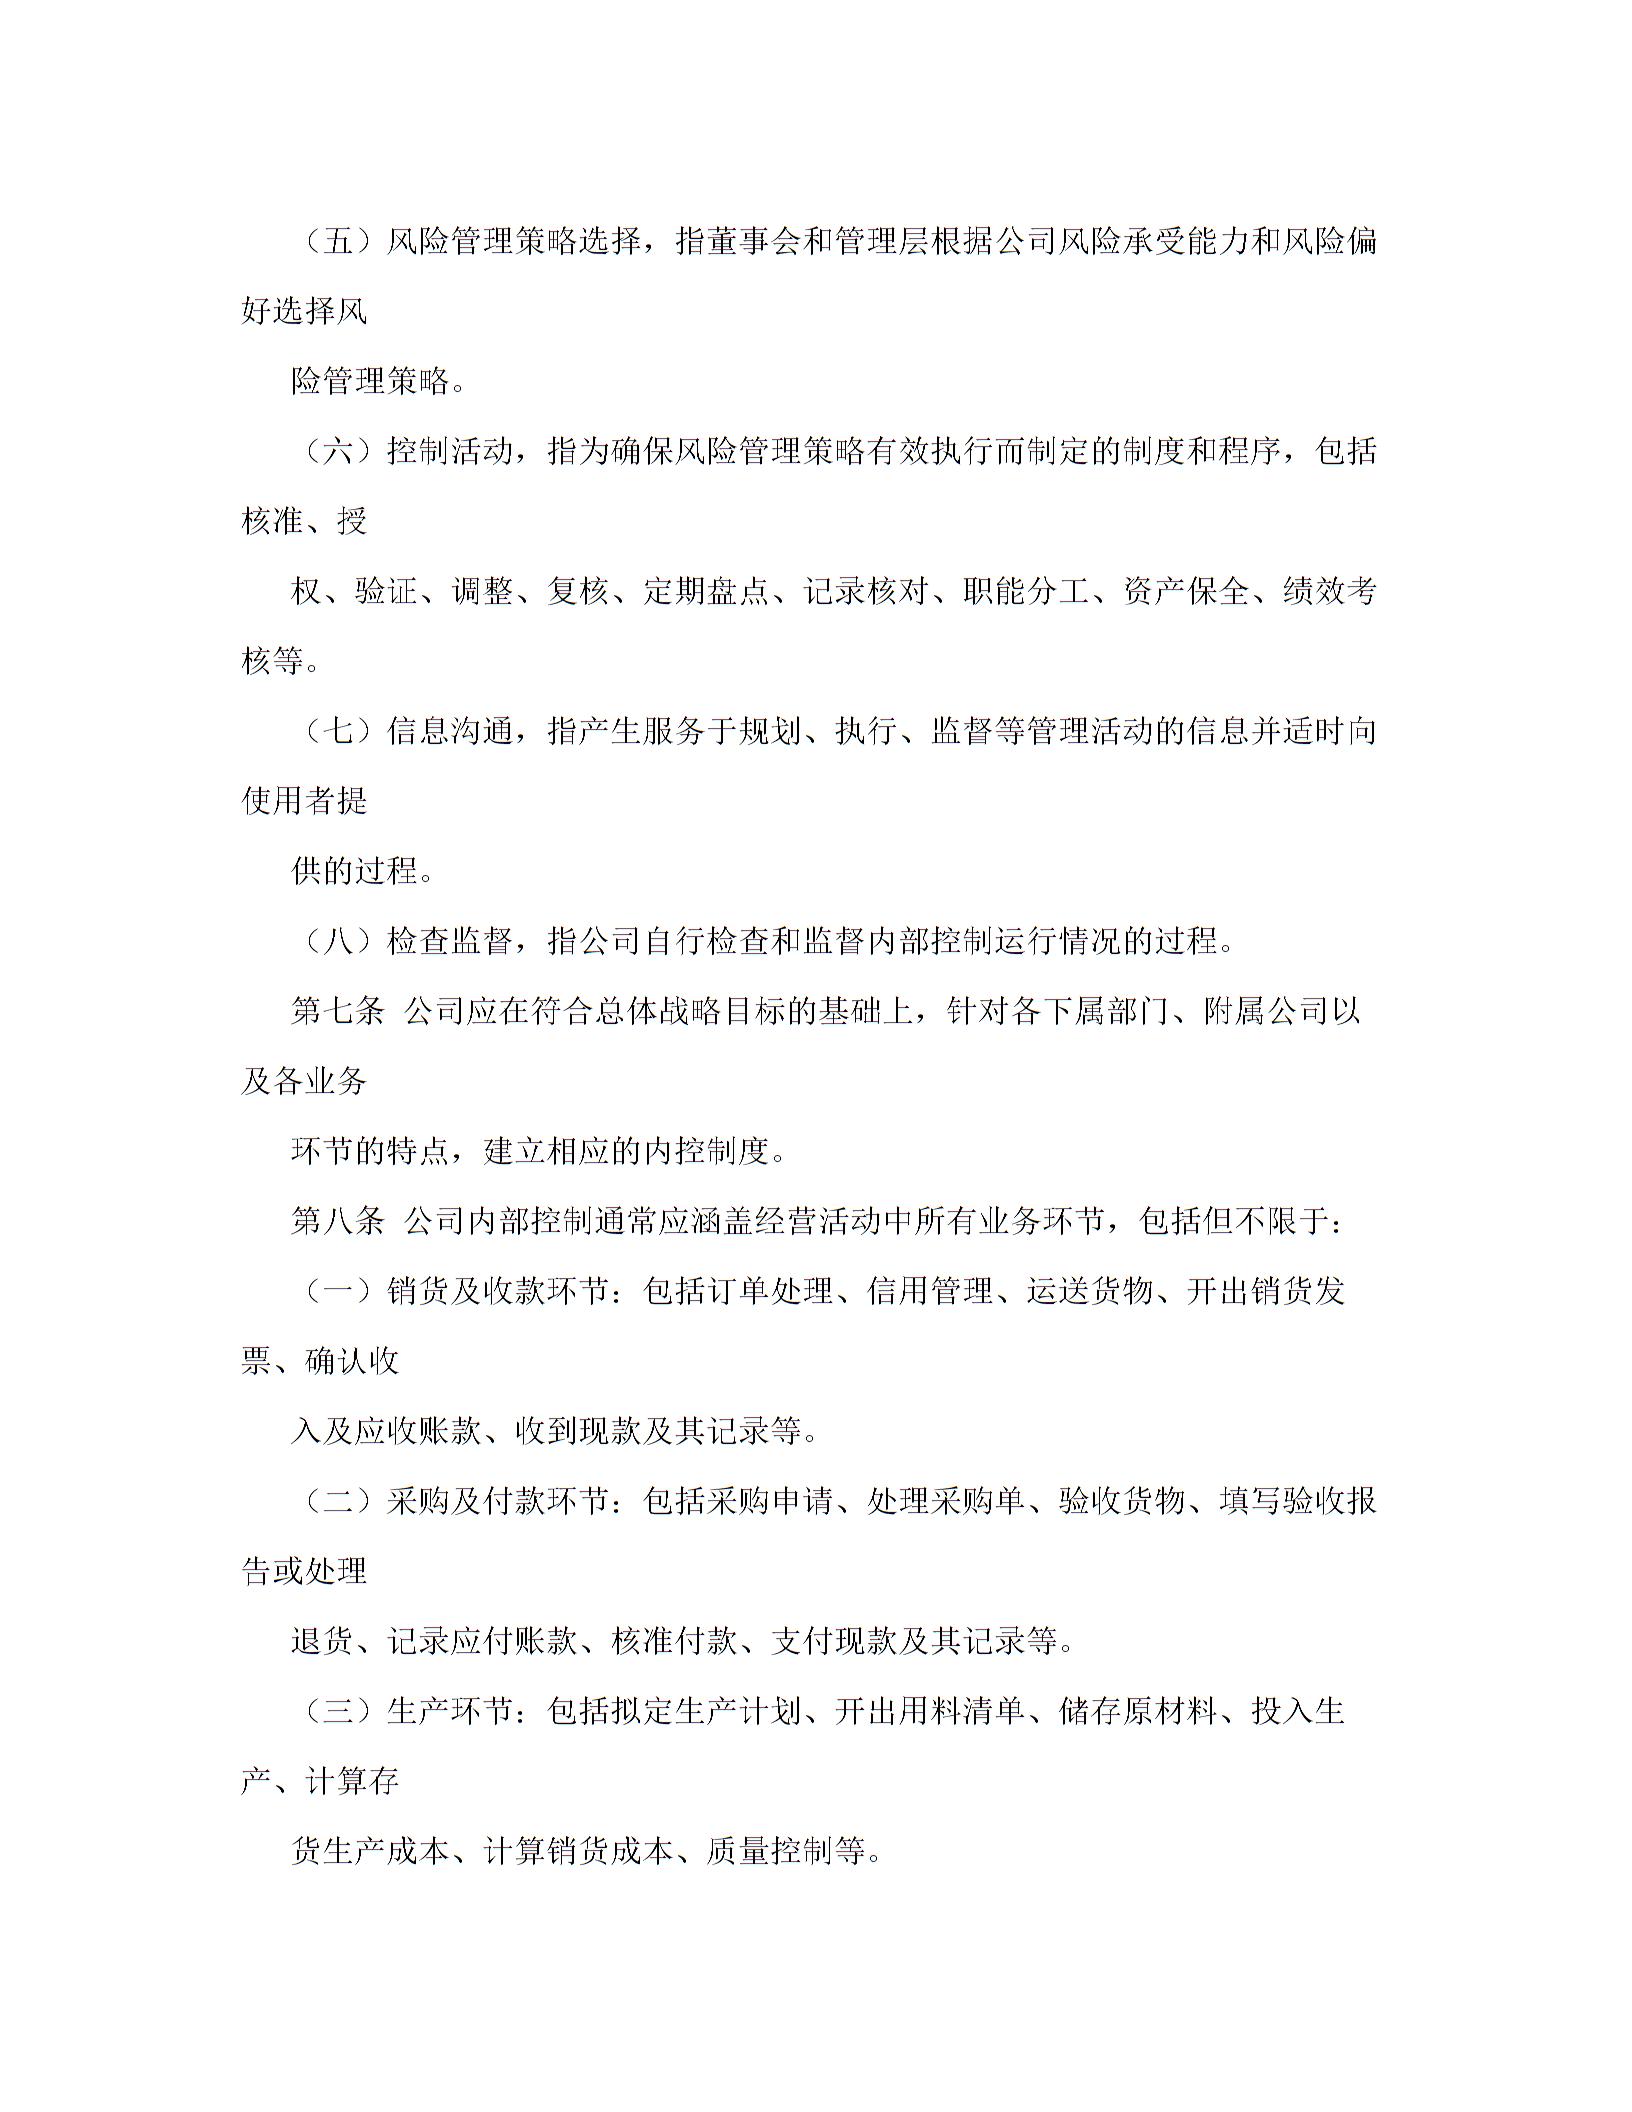 上海证券交易所上市公司内部控制指引图片2